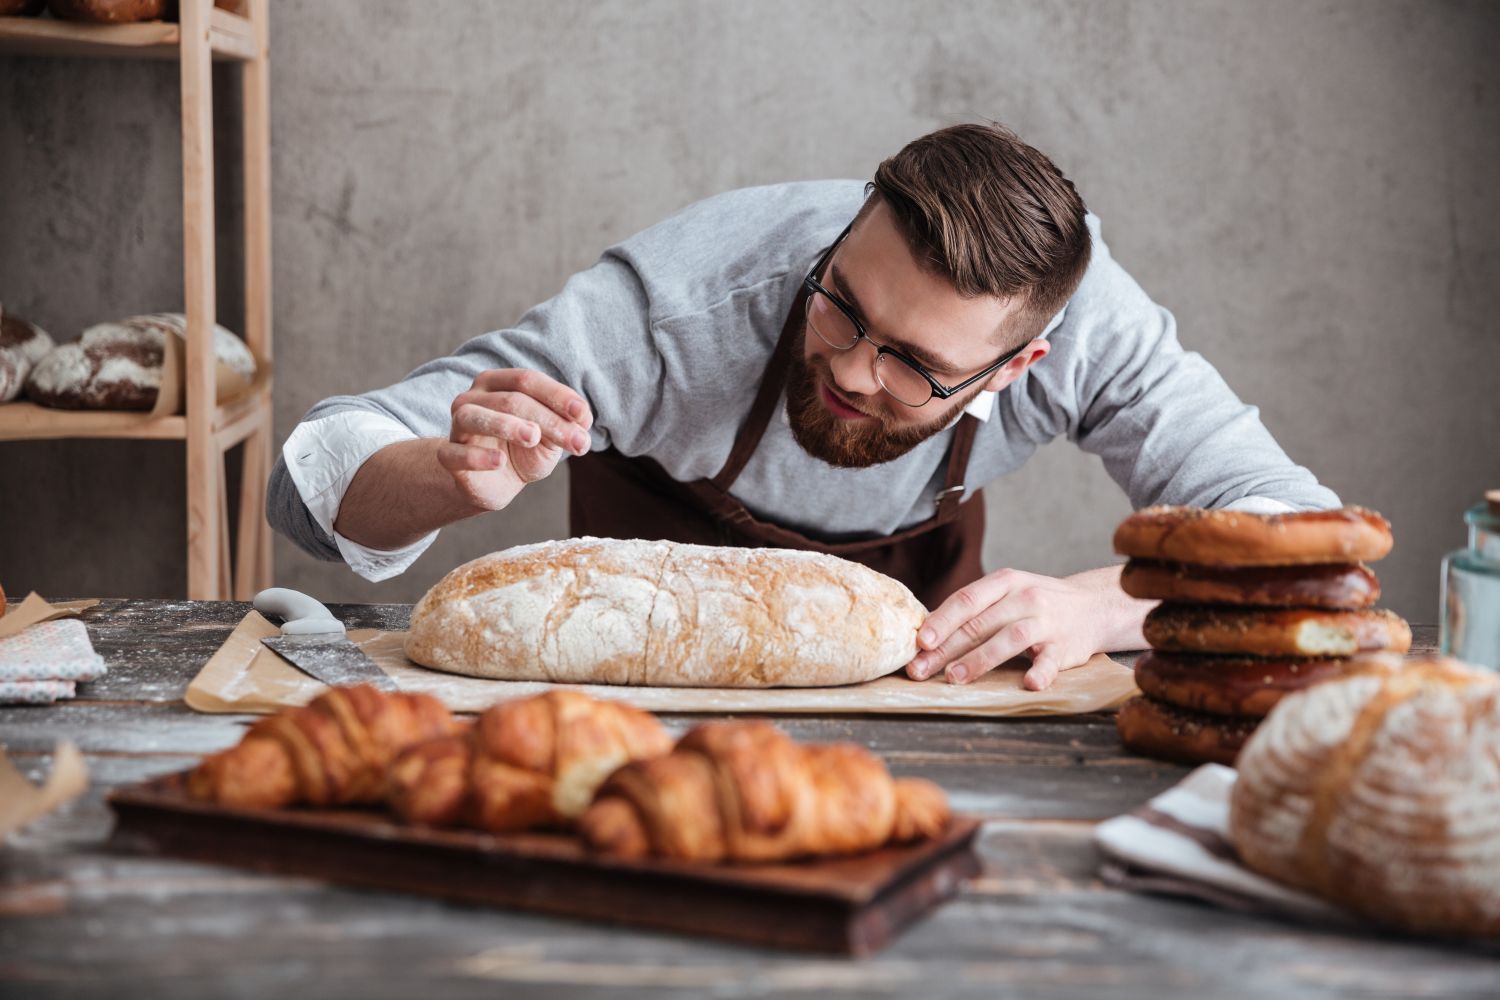 Comment les boulangers belges peuvent être plus attractifs que le supermarché